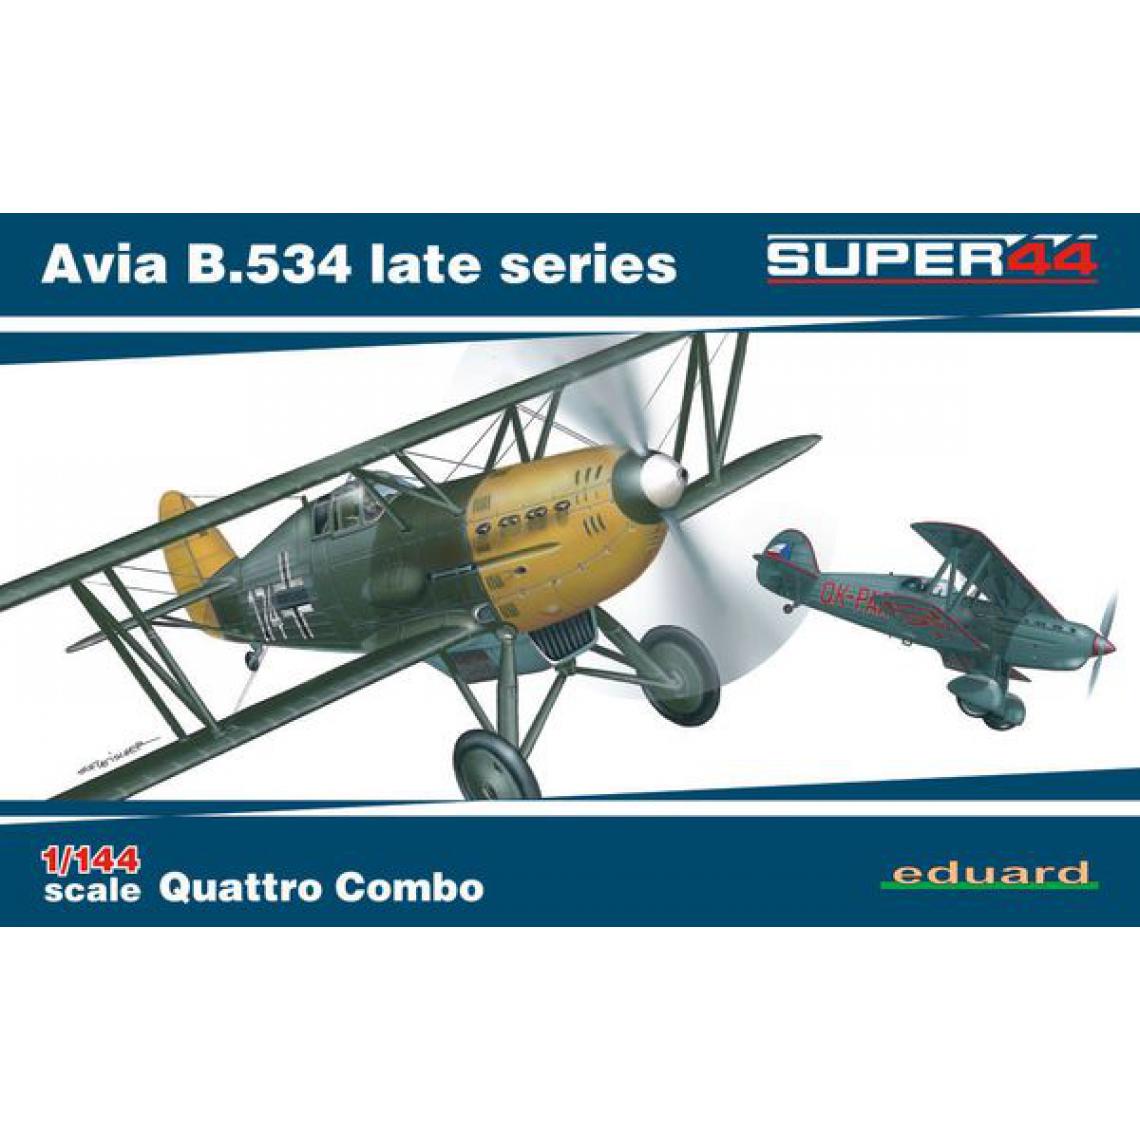 Eduard - Avia B.534 late series Quattro Combo Super44- 1:144e - Eduard Plastic Kits - Accessoires et pièces